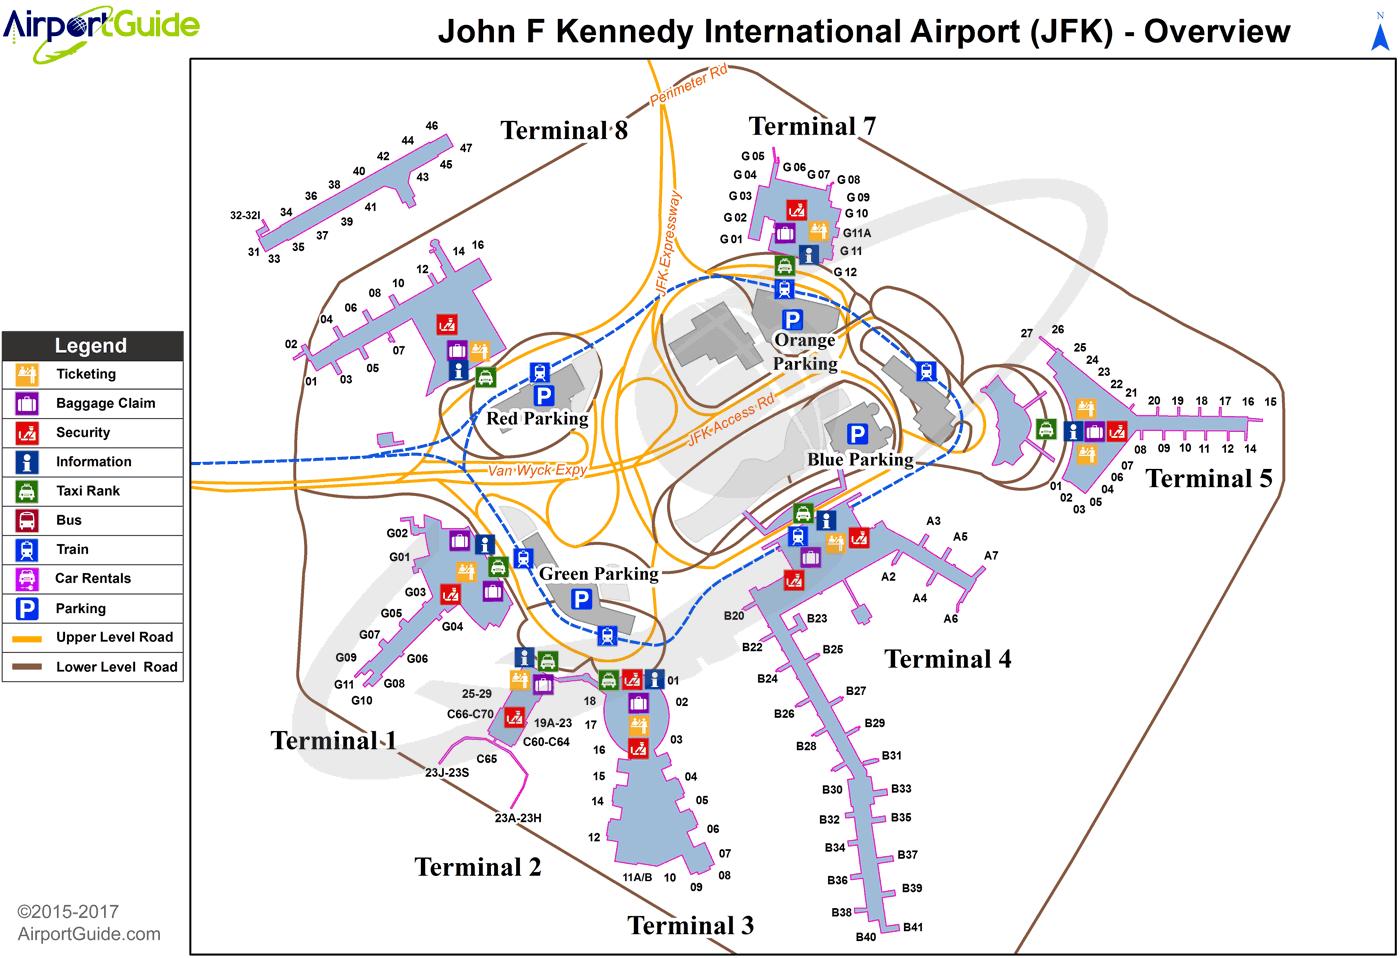 jfk flight arrivals